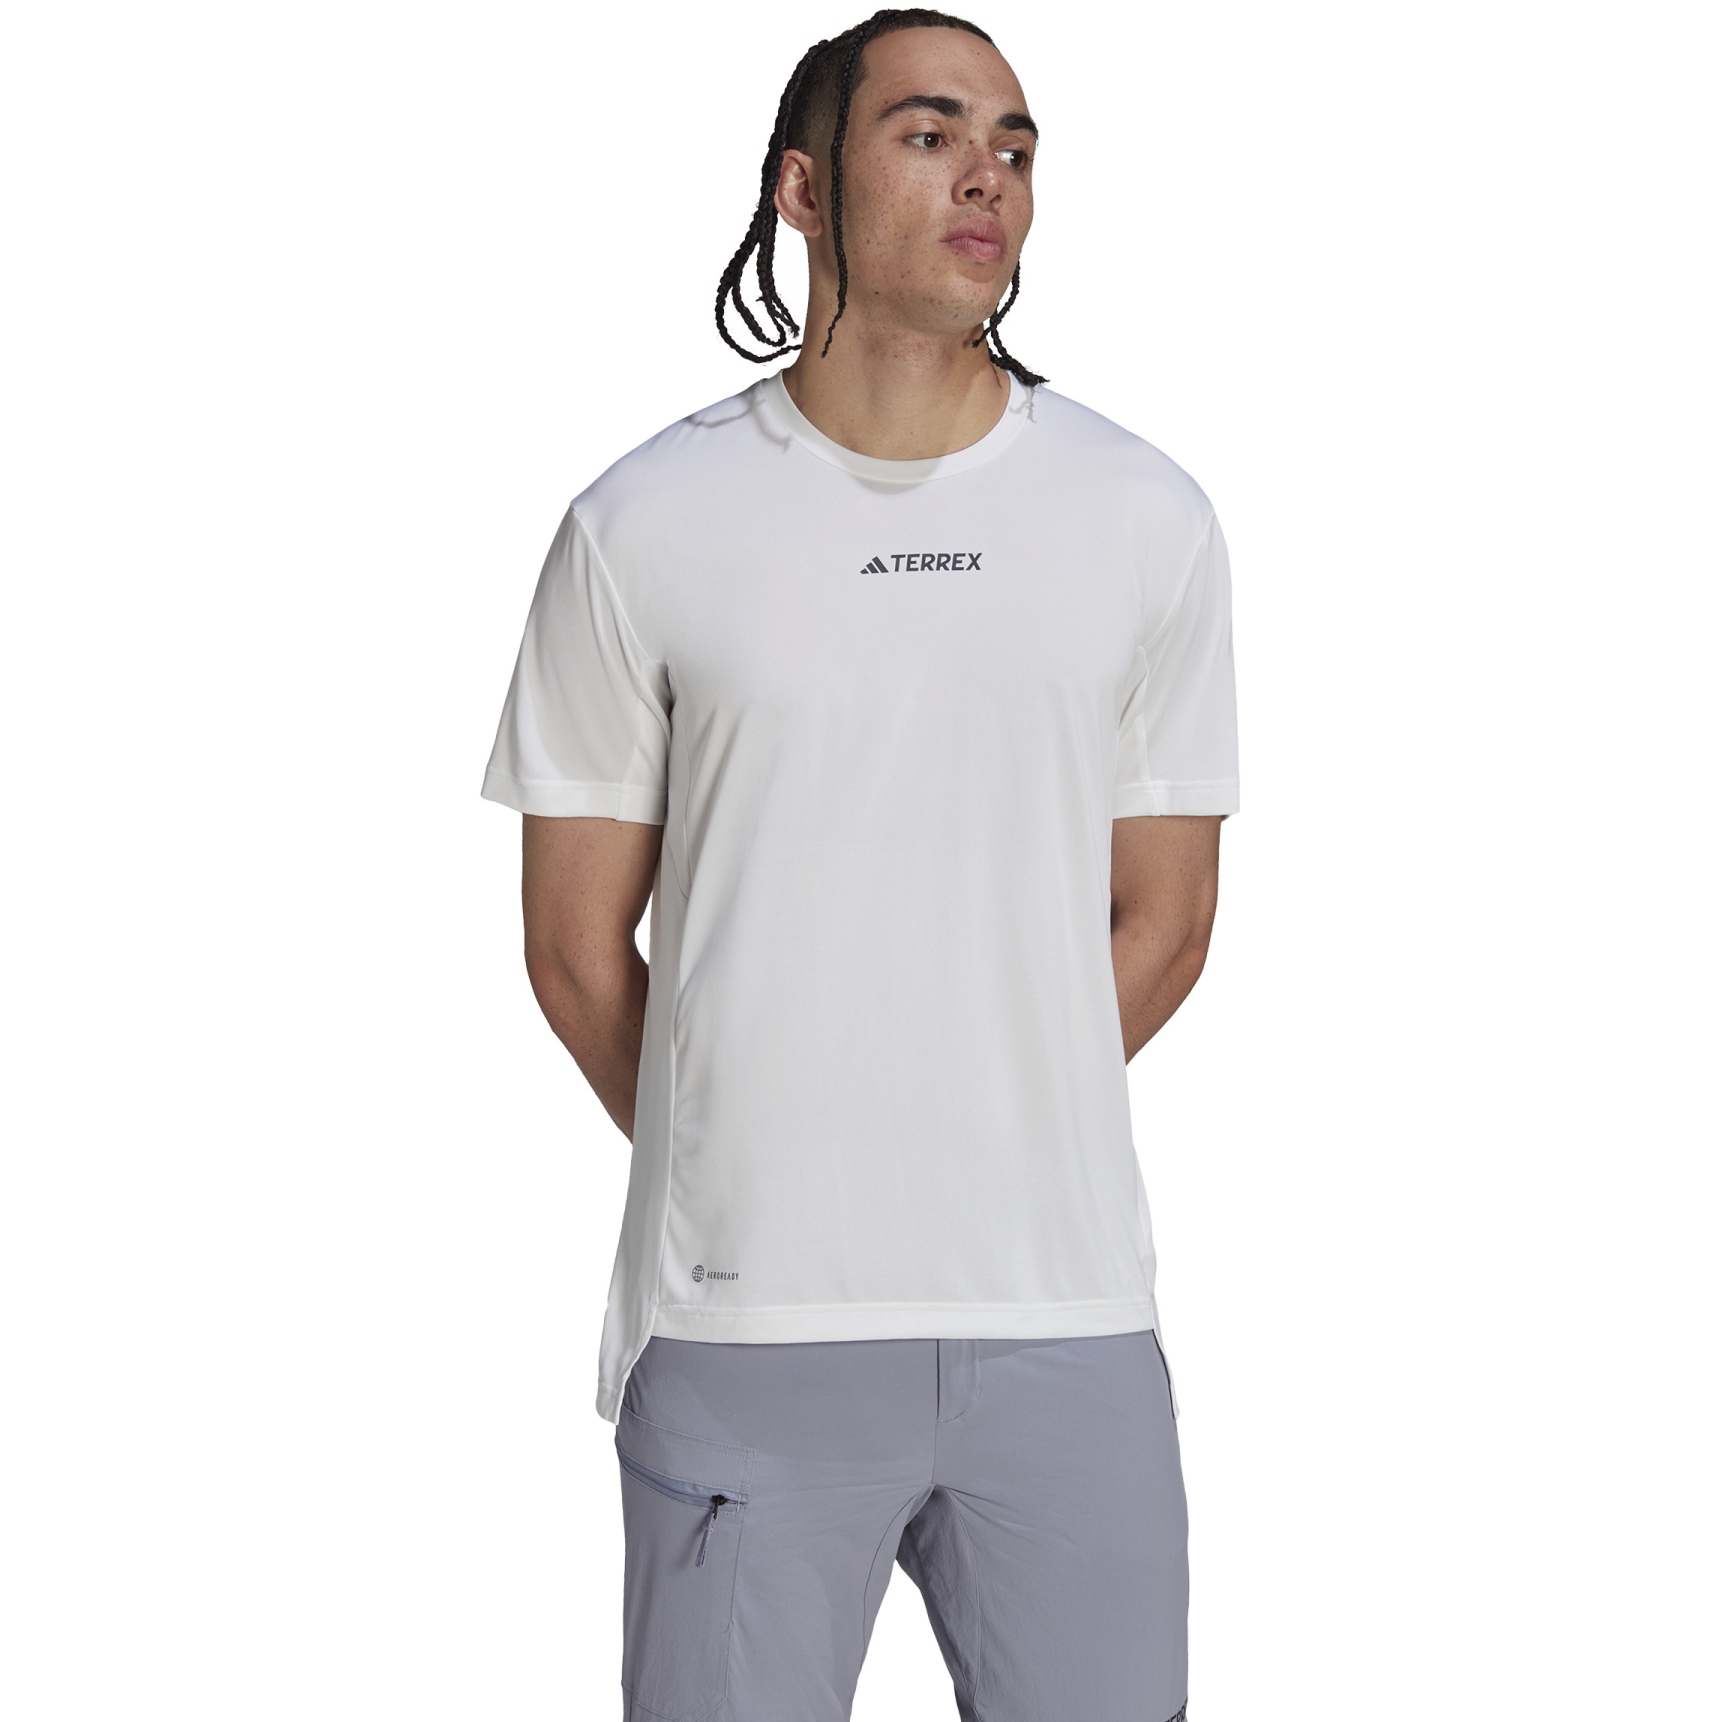 Produktbild von adidas TERREX Multisport T-Shirt Herren - weiß HM4047